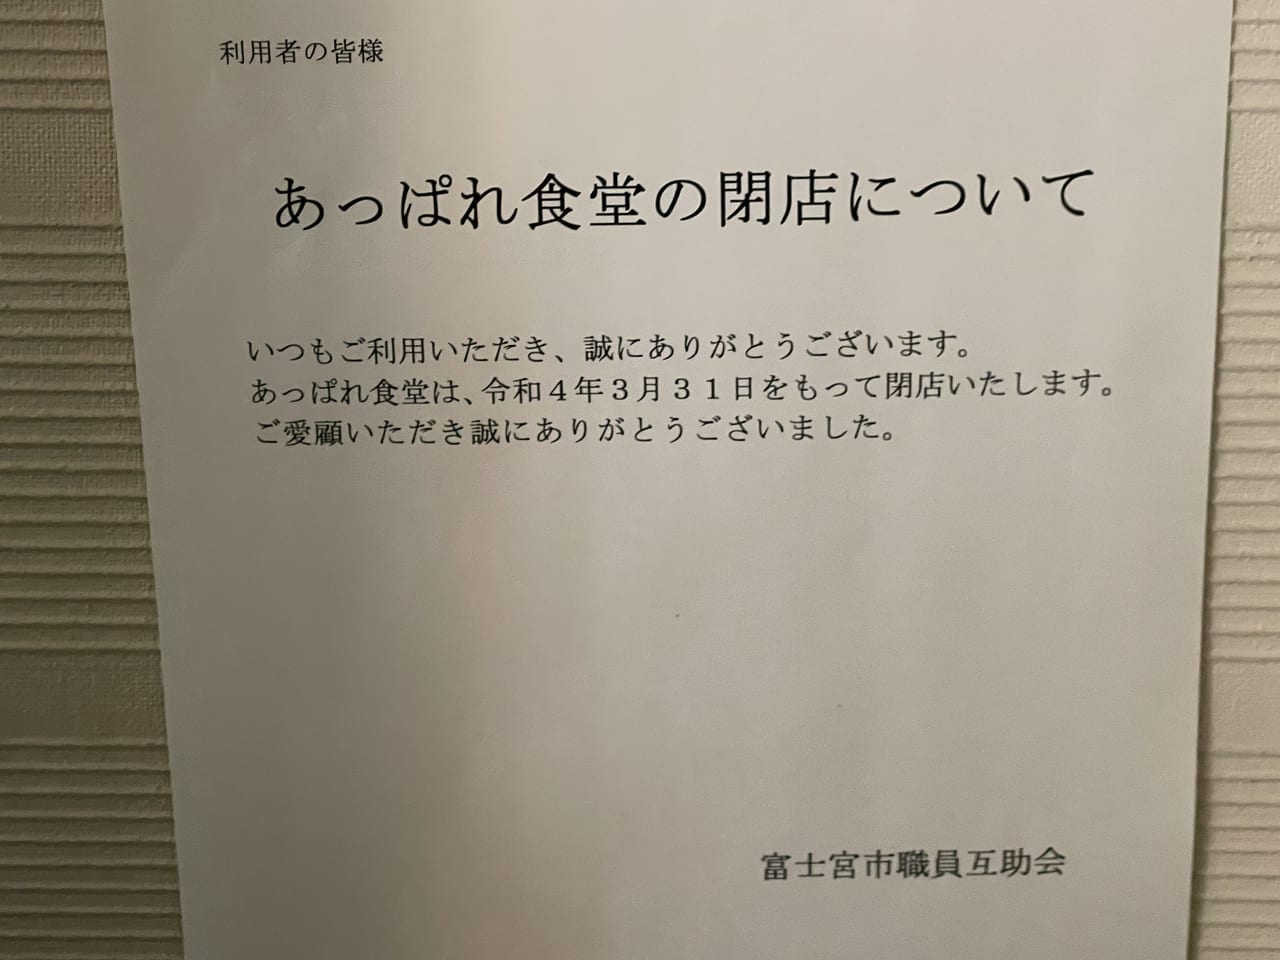 【富士宮市】富士宮市役所のレストランが3月31日をもって閉店してしまいます